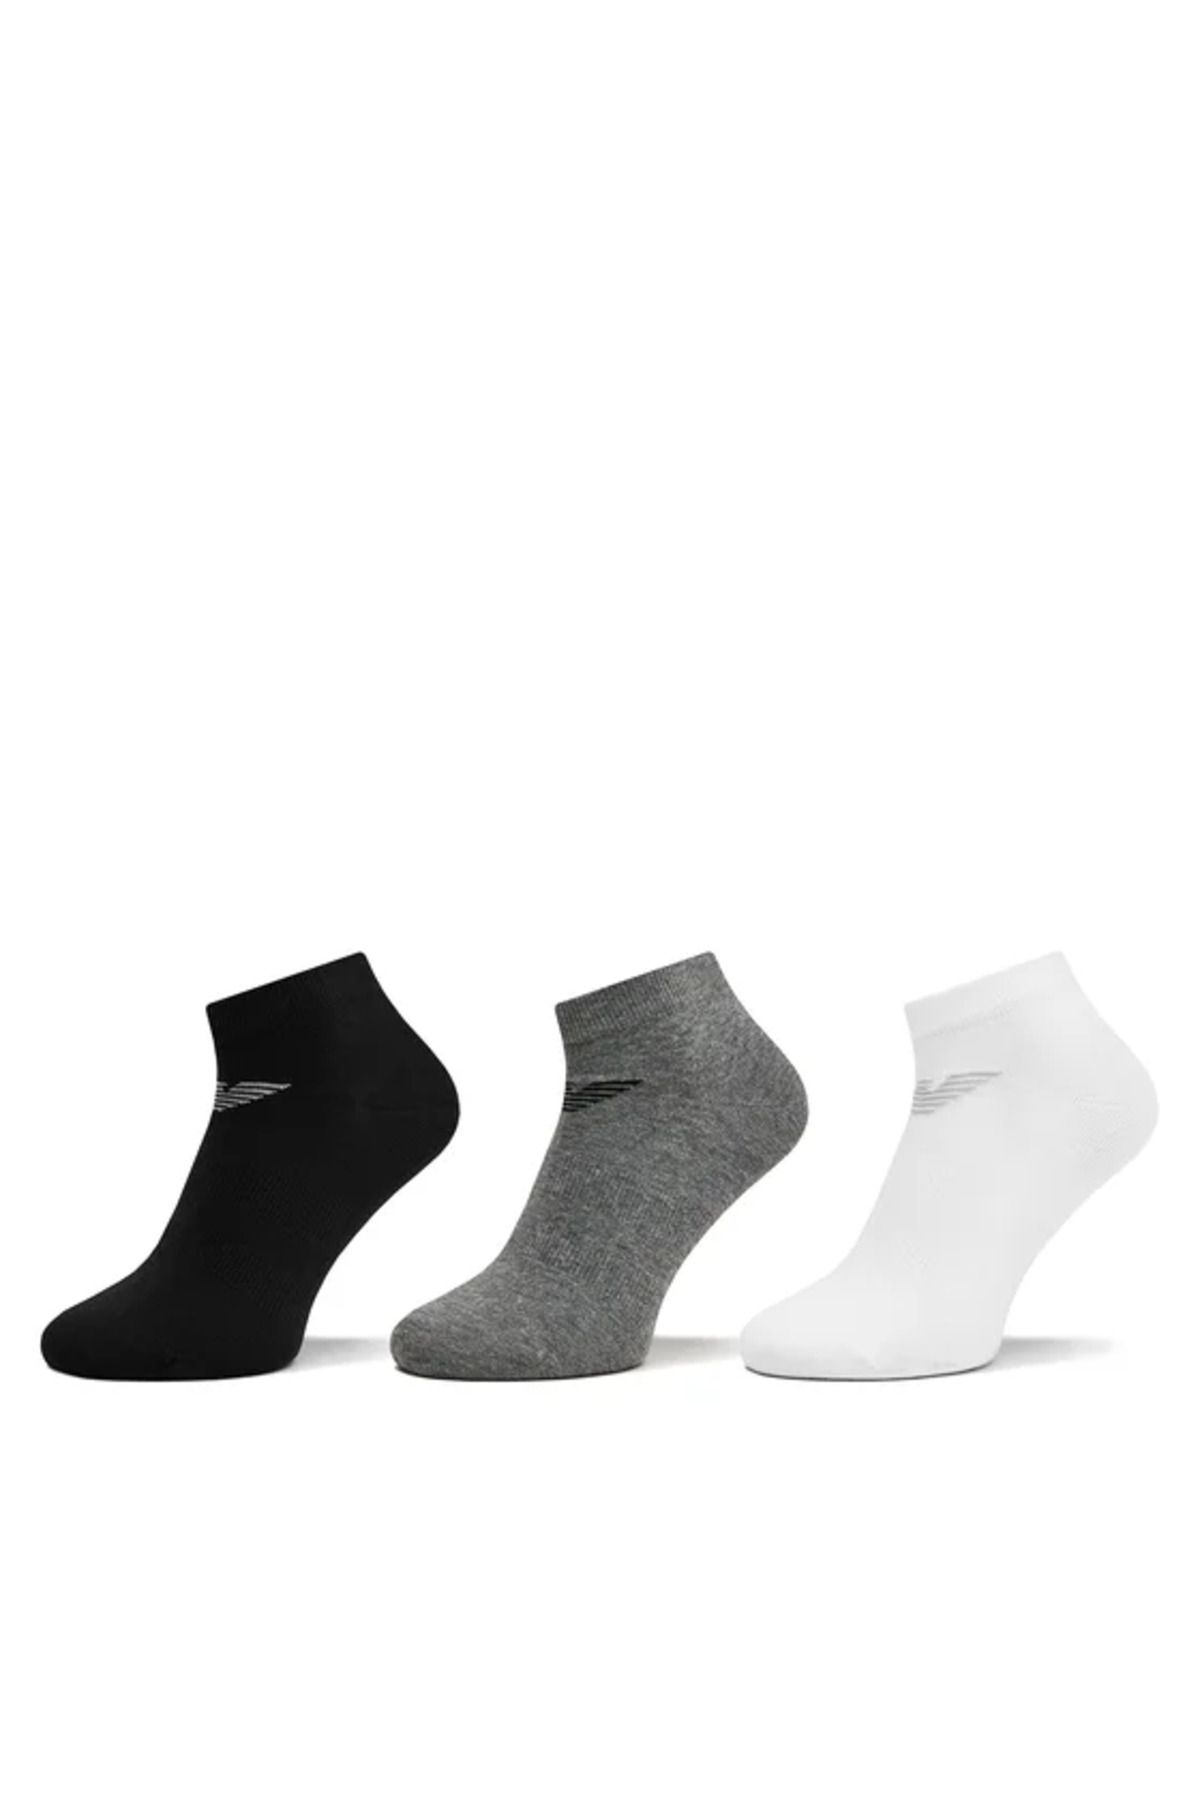 Emporio Armani Erkek Marka Logo Detaylı 3'lü Basic Siyah Çorap 300048 4R234-35521